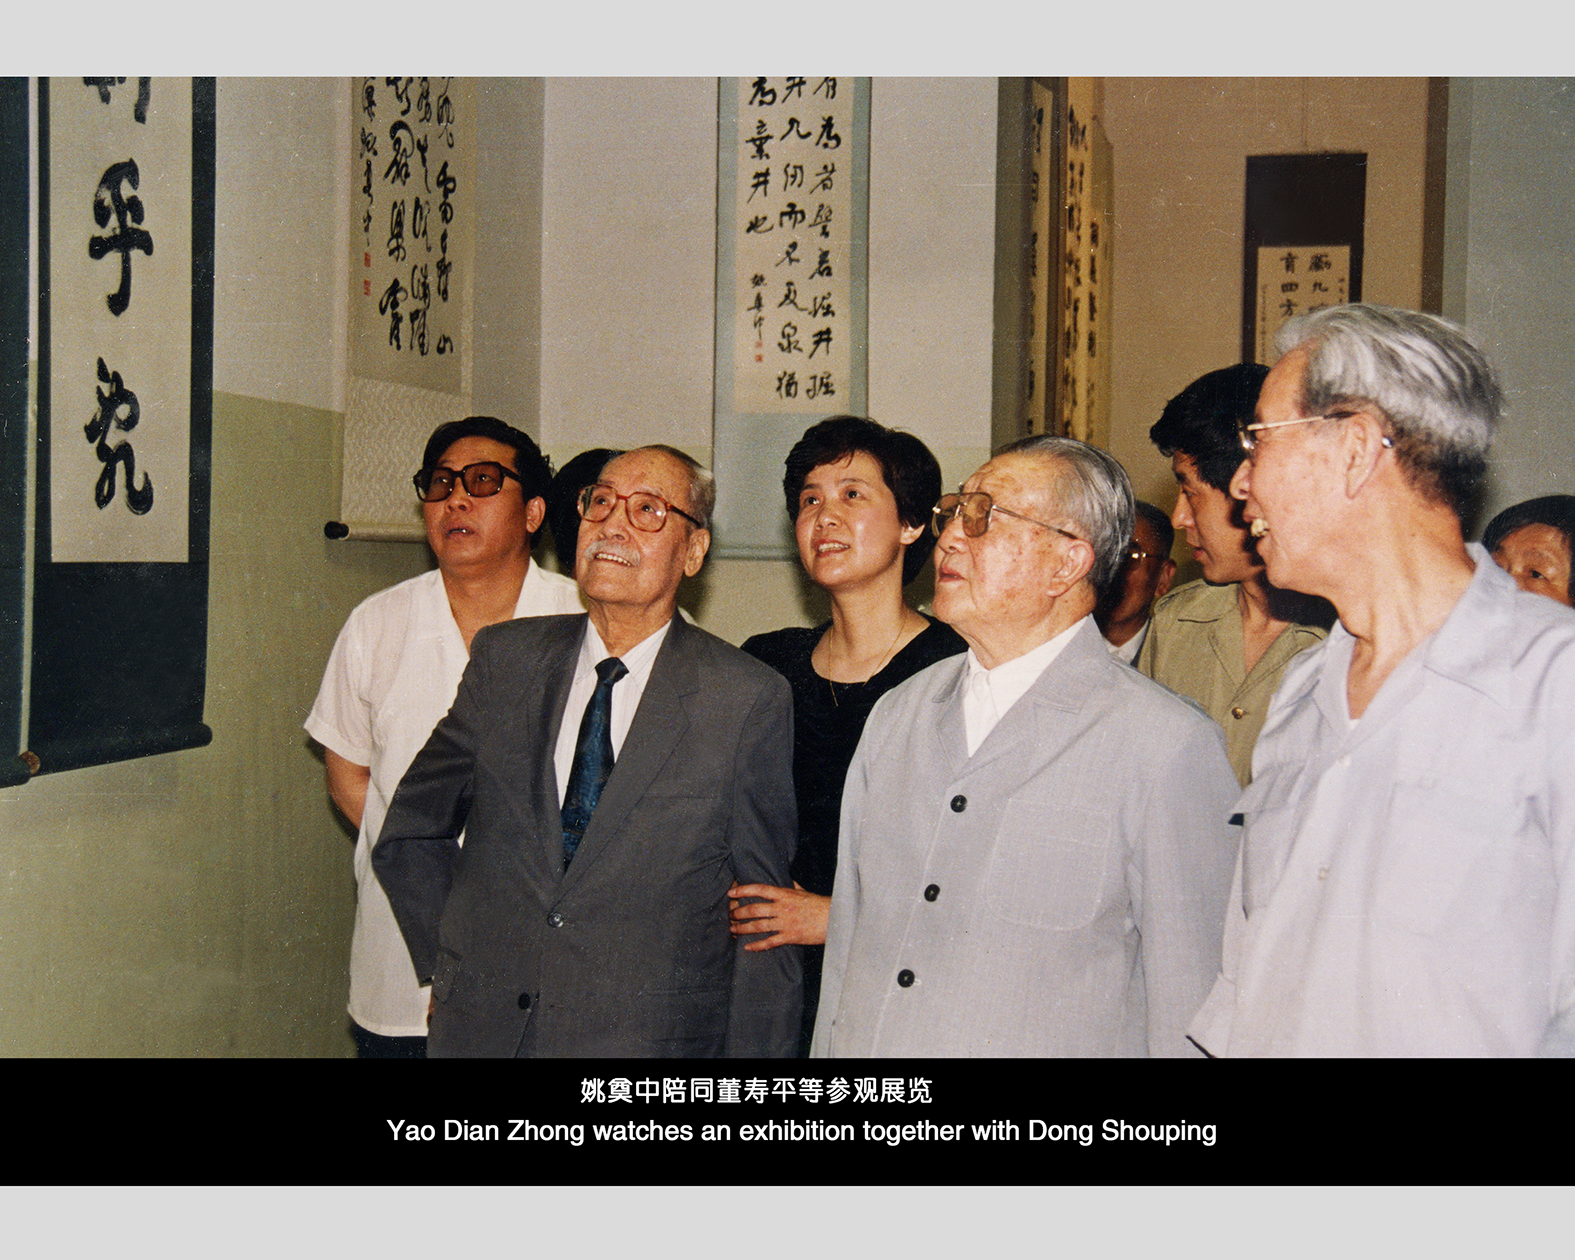 1993年中国美术馆姚奠中（右一）陪同罗贵波（右二）、董寿平（右三）观看“姚奠中书艺展”